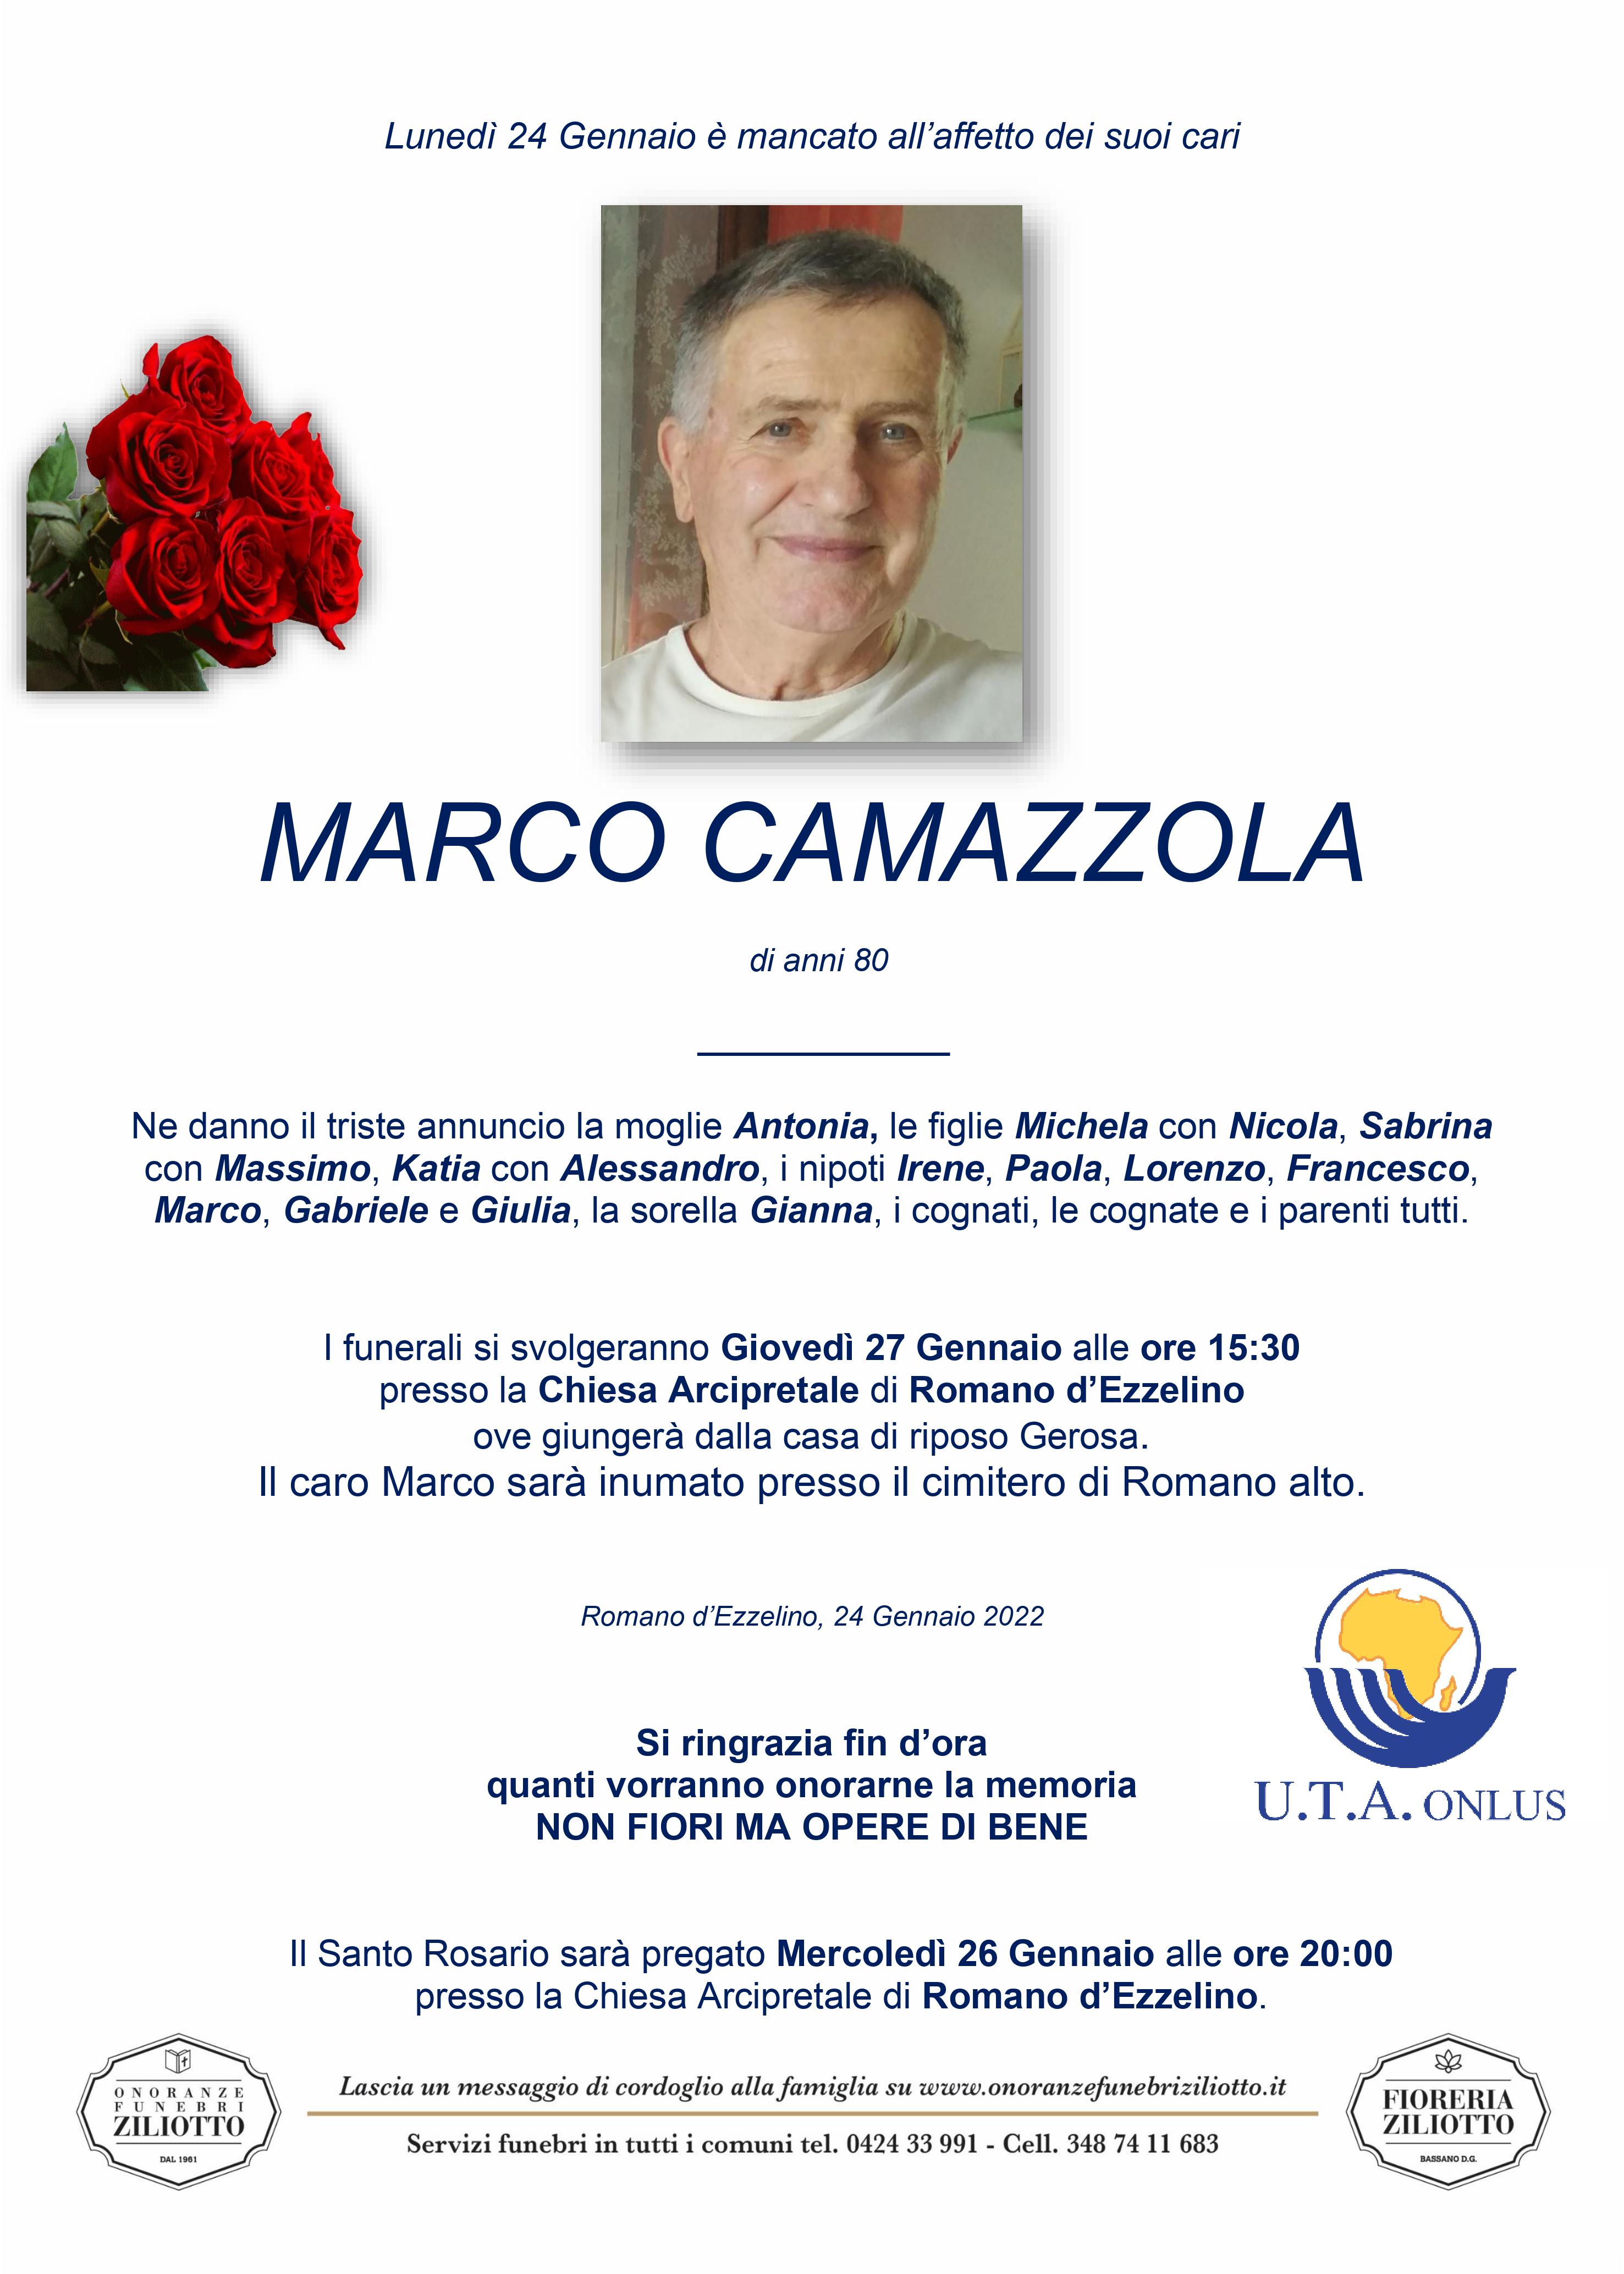 Marco Camazzola - 80 anni - Romano d'Ezzelino